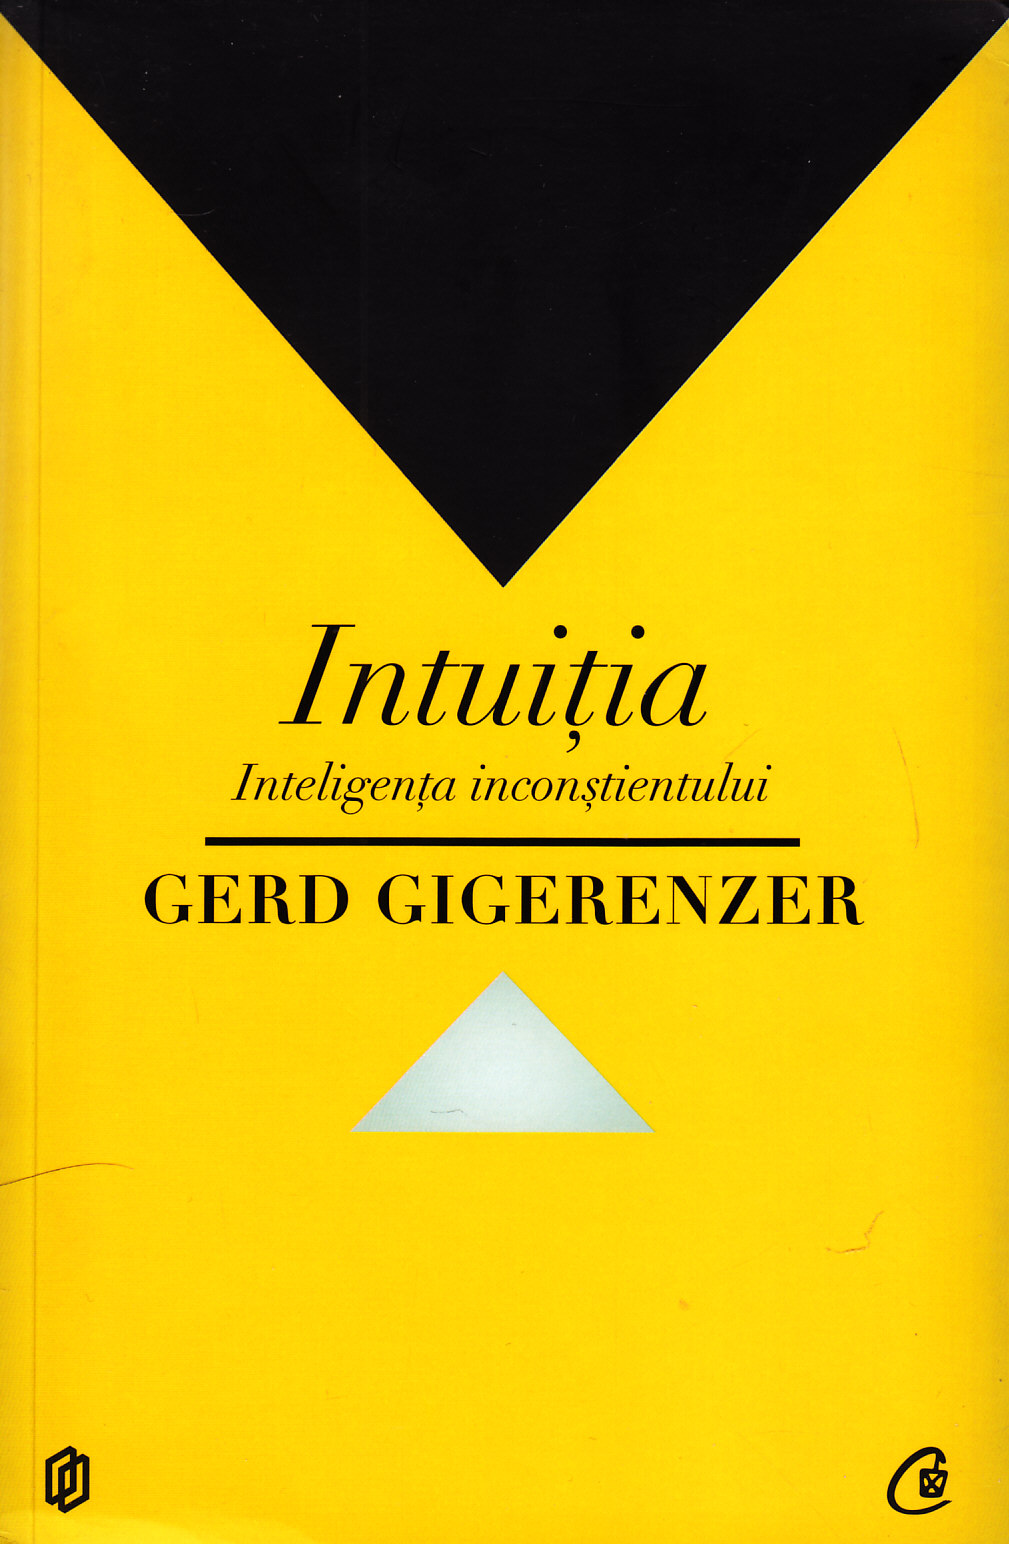 Intuitia - Gerd Gigerenzer